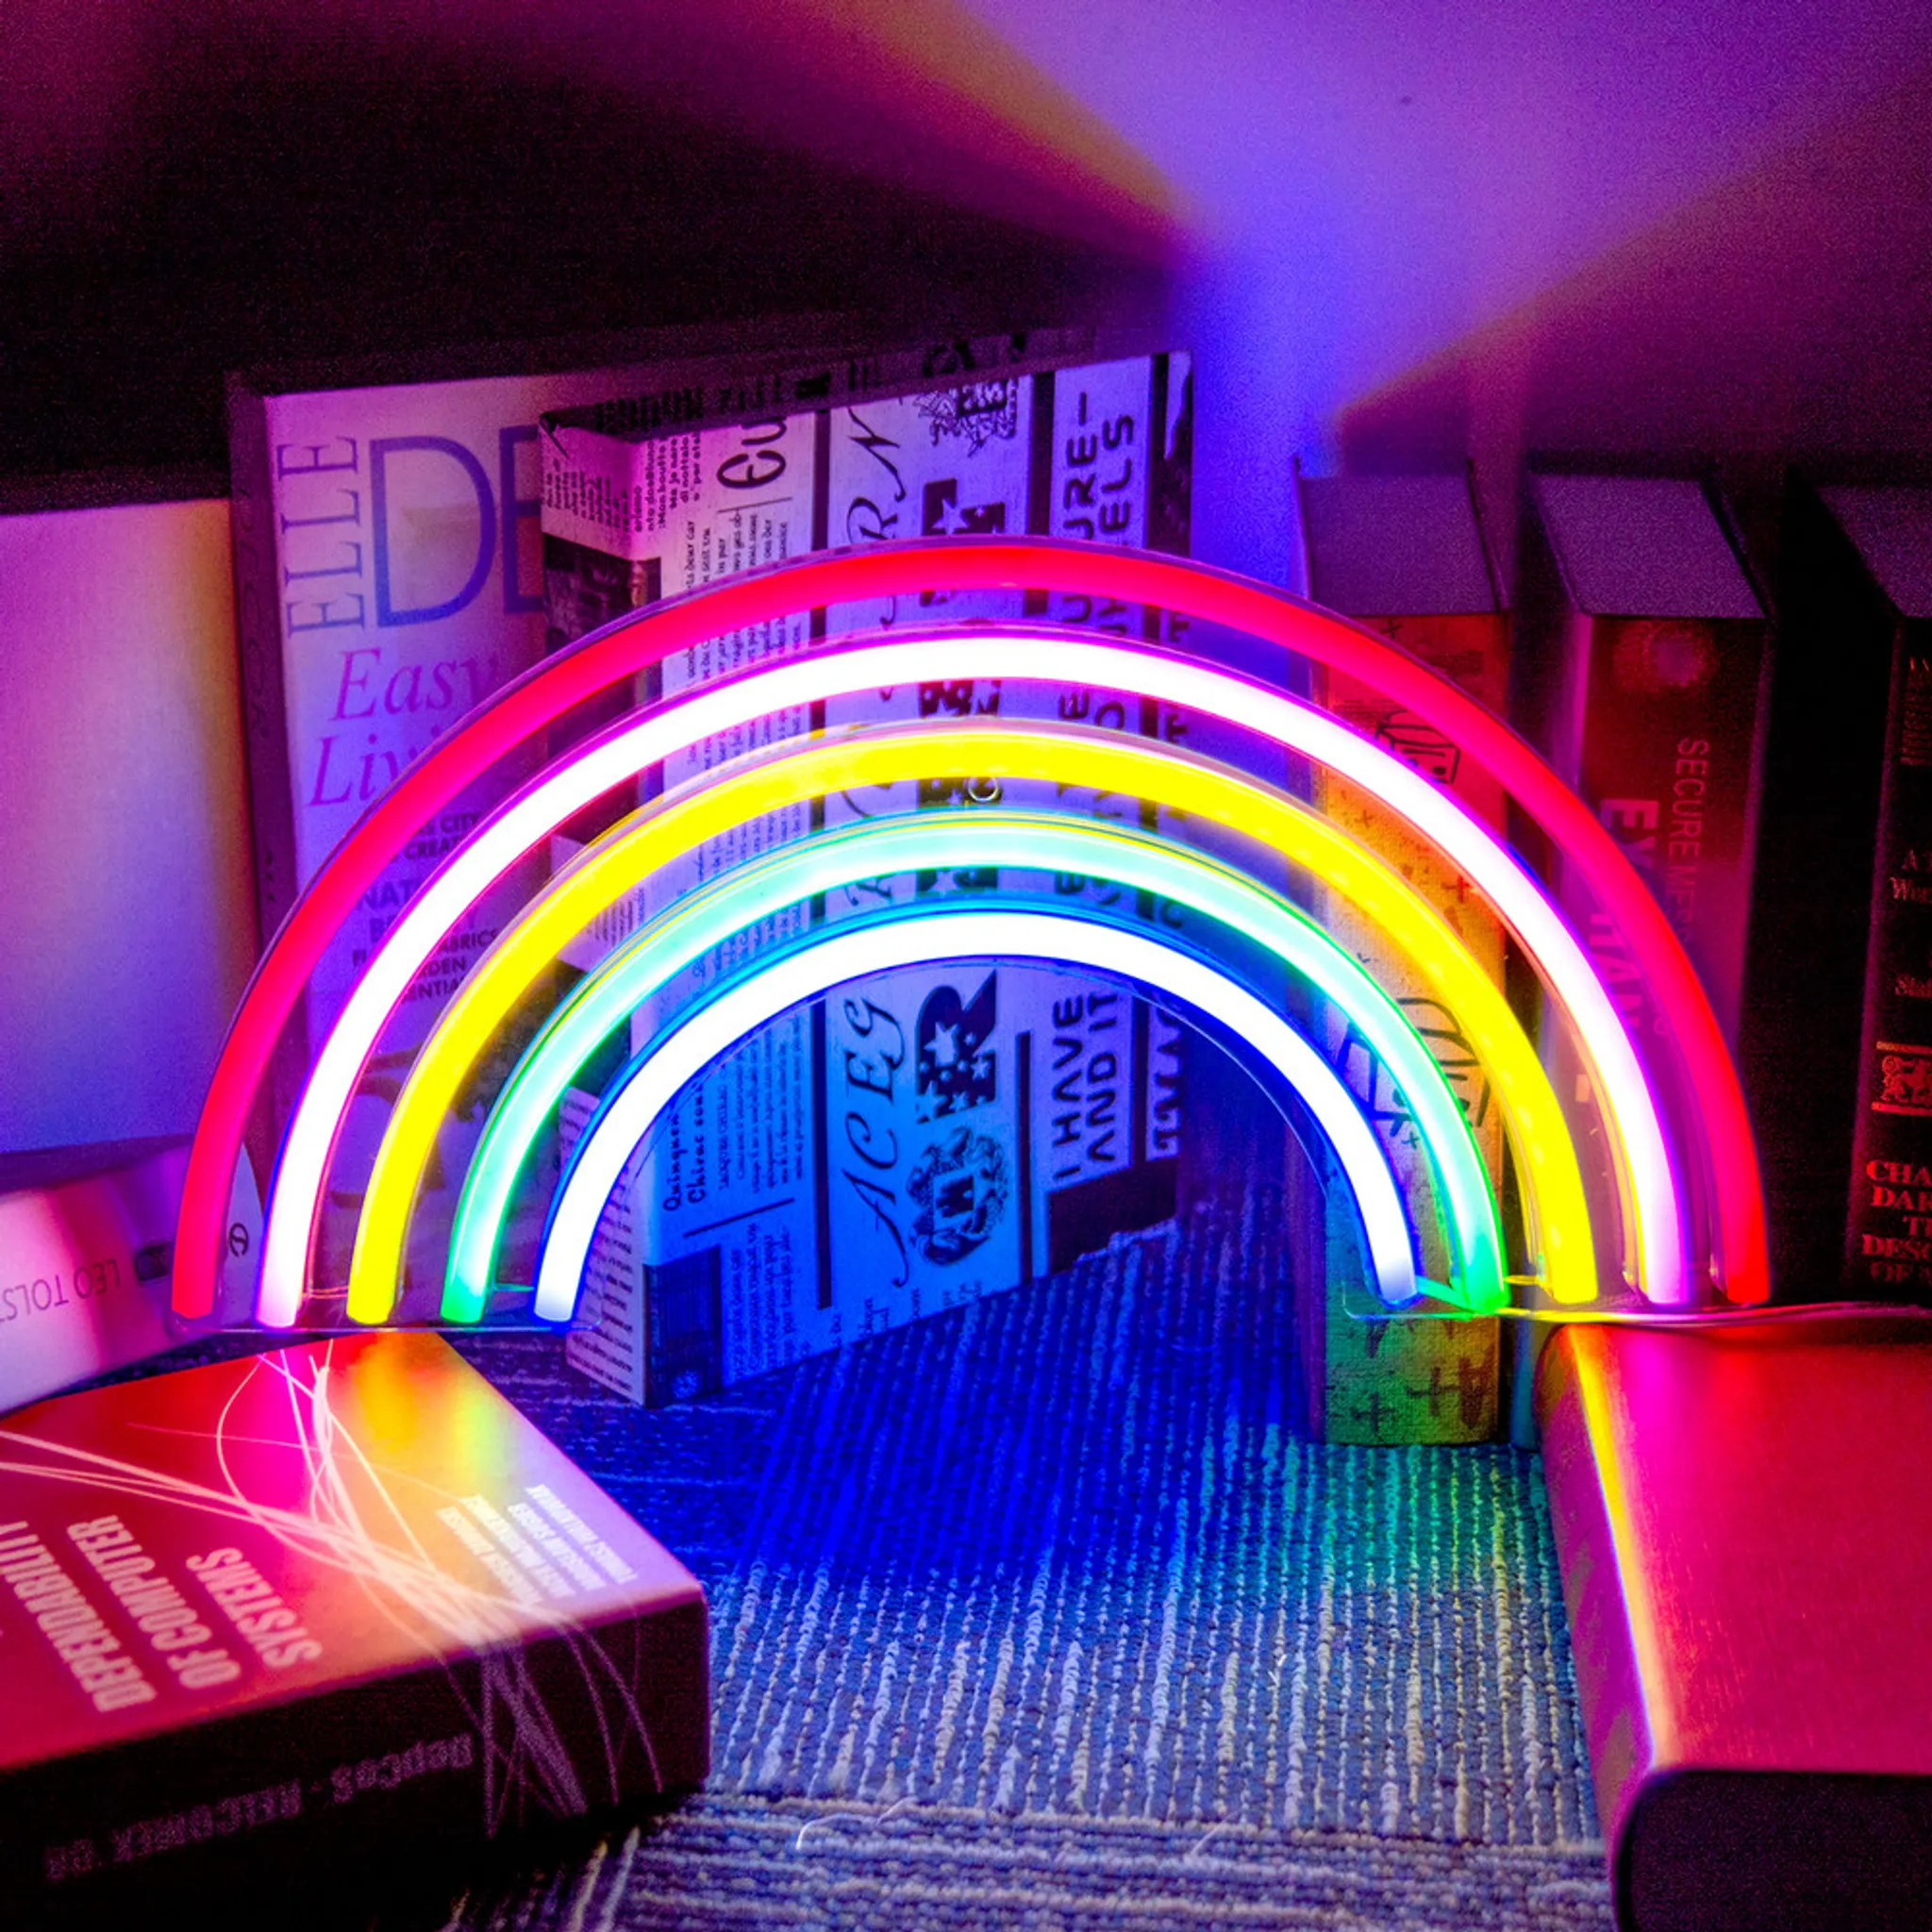 USB Sunset Lampe LED Projektor Nacht Licht 16 Farben Projektor Licht  Regenbogen Atmosphäre Zu Hause Schlafzimmer Hintergrund Wand Dekoration